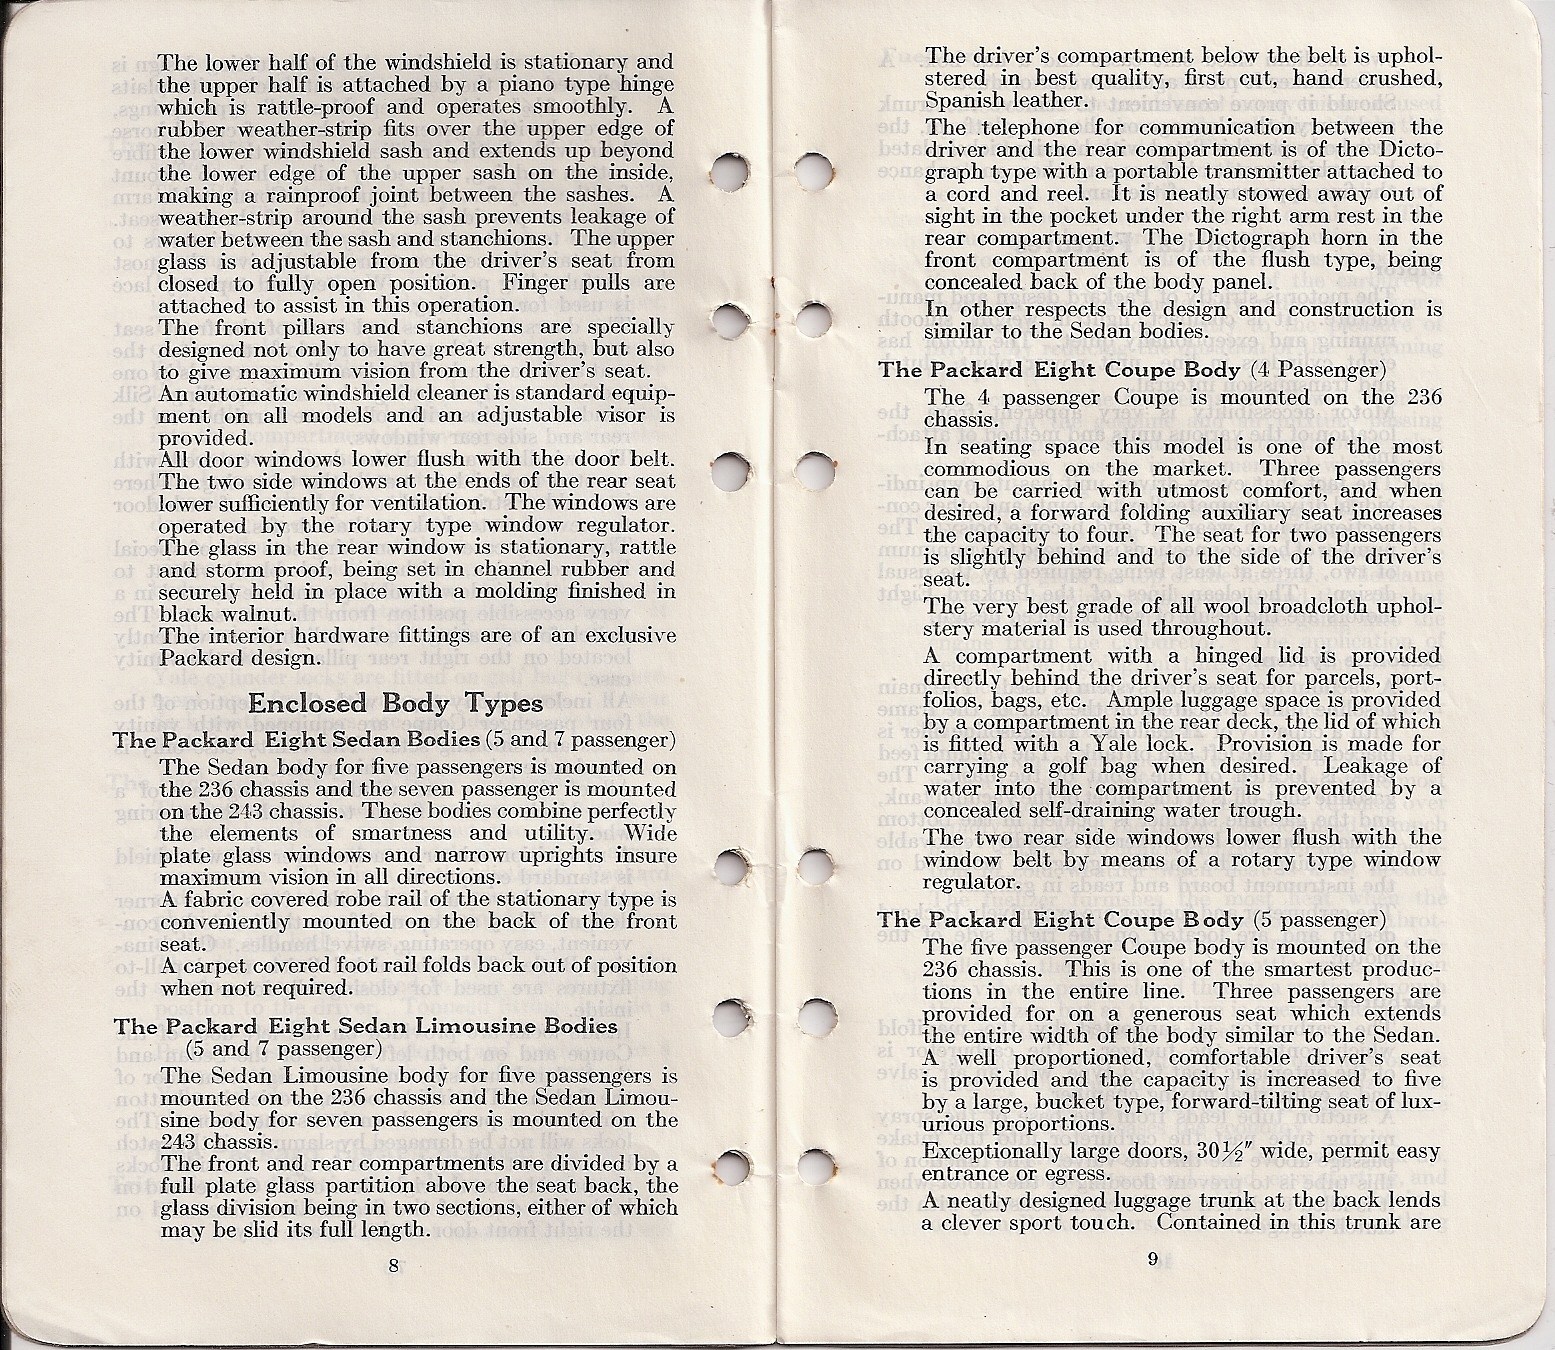 1925_Packard_Eight_Facts_Book-08-09